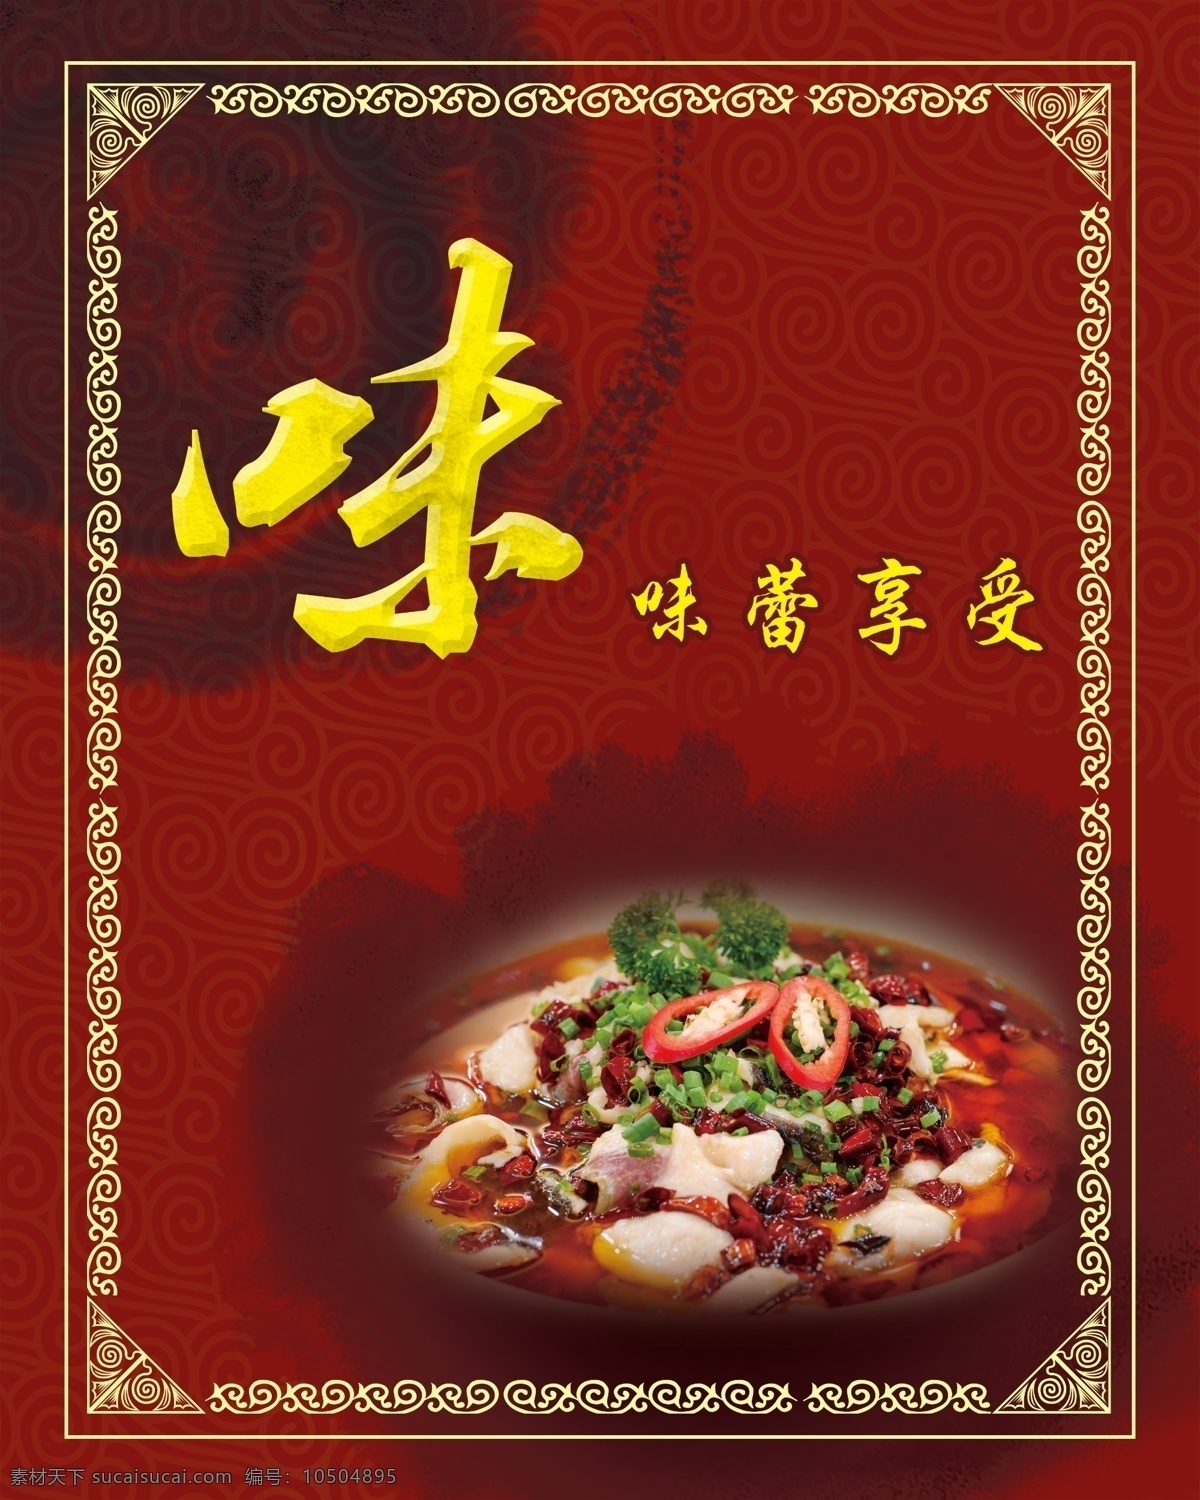 菜品展示 菜品 菜谱 菜单 红色背景 中国元素 色 香 味 形 意 养 分层